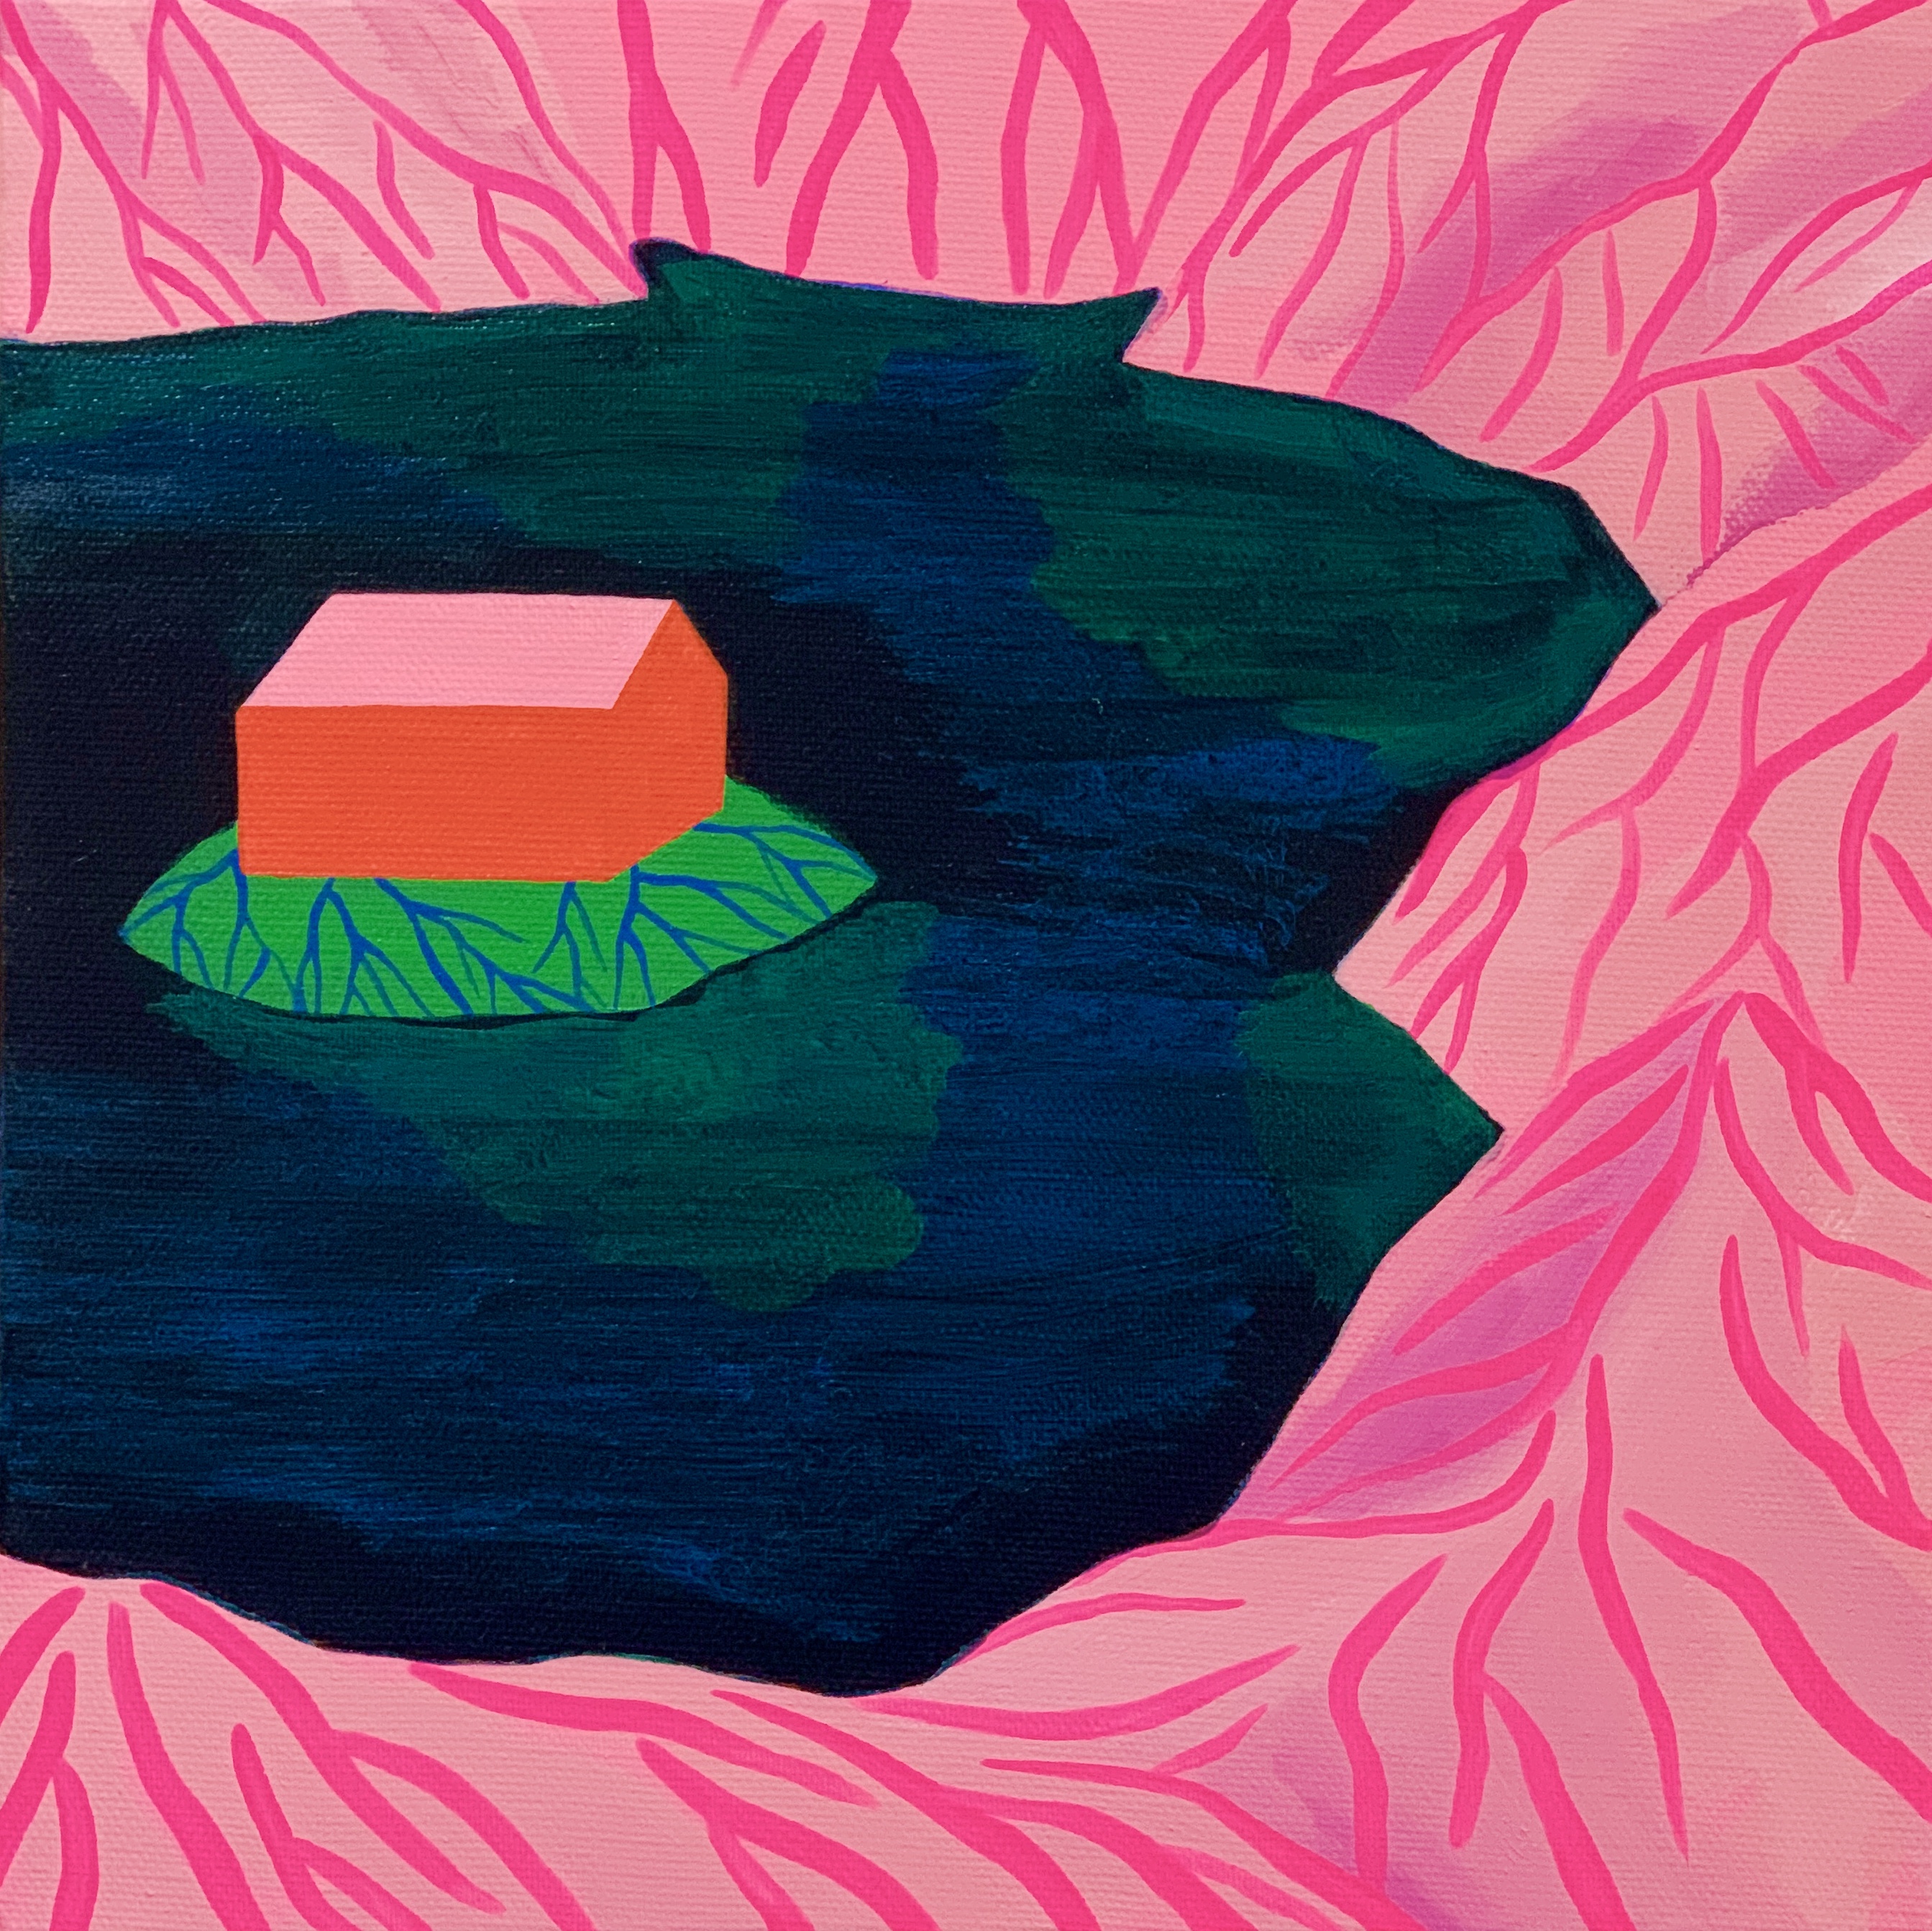 Island,27.3x27.3cm,acrylic on canvas,2020